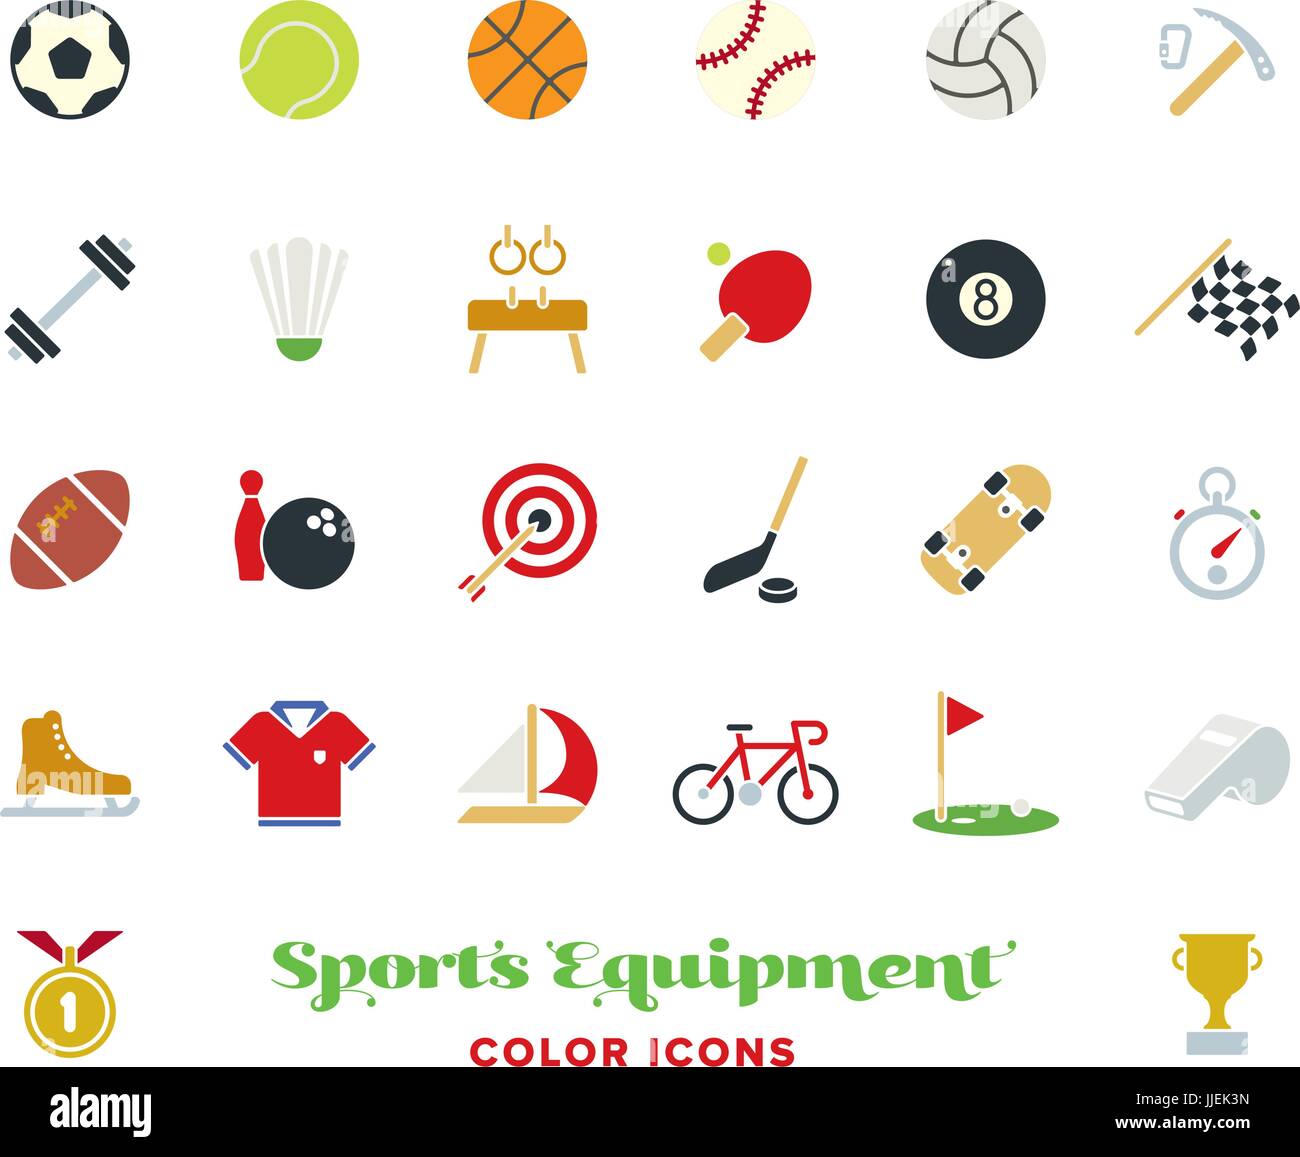 Sammlung von 25 Sport und Gymnastik Farbe Vektor-Icons auf weißem Hintergrund Stock Vektor